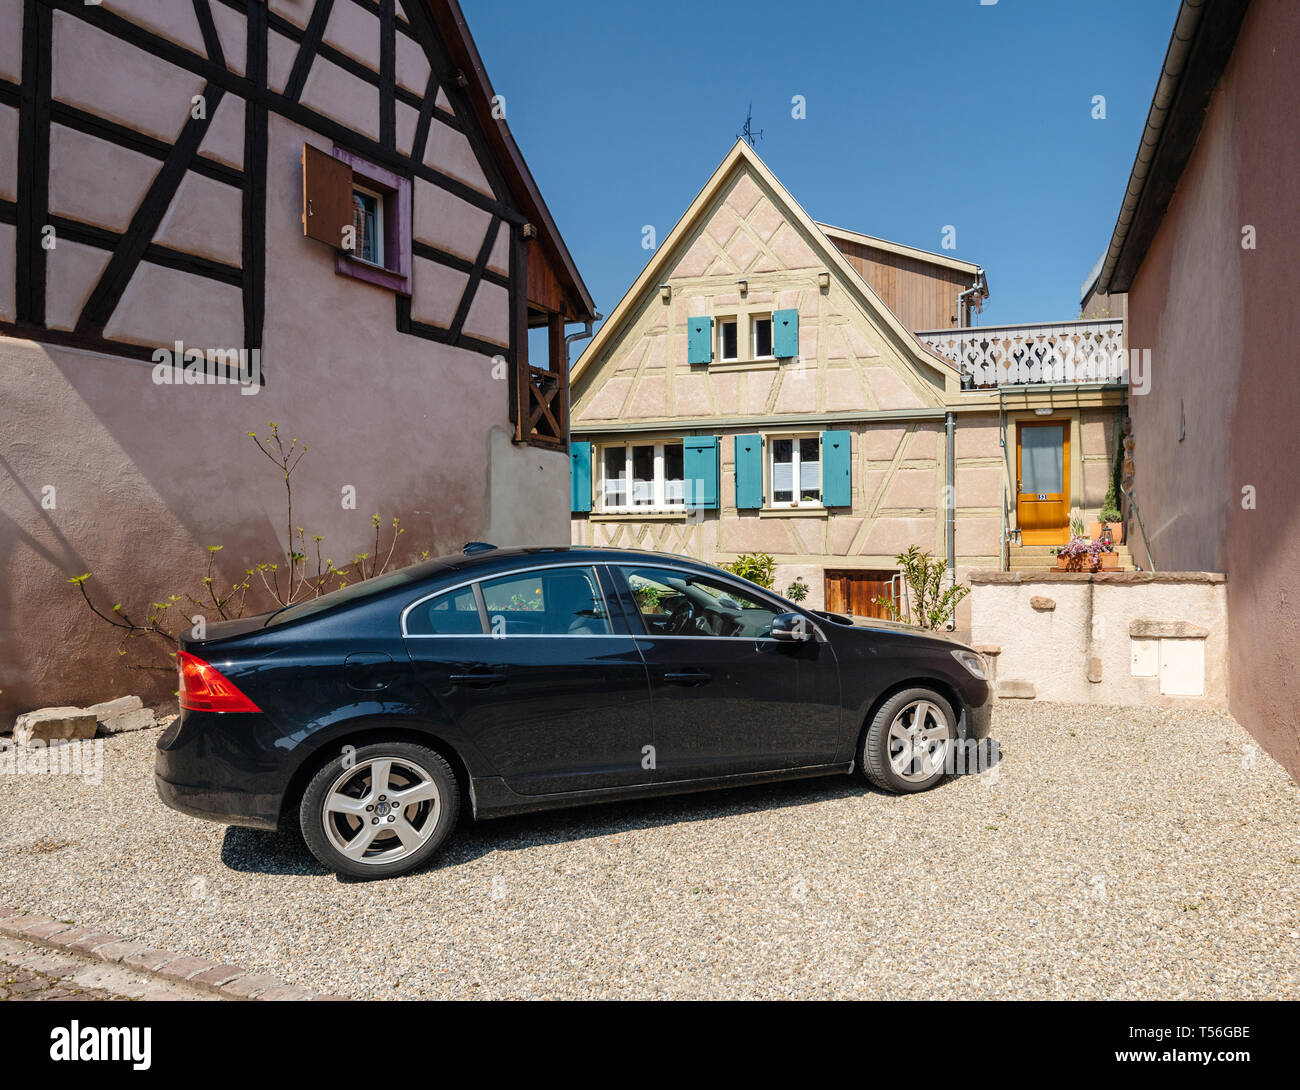 Bergheim, France - 19 Avril 2019 : Noir De Luxe limousine Volvo voiture garée en face de maison alsacienne typique Banque D'Images